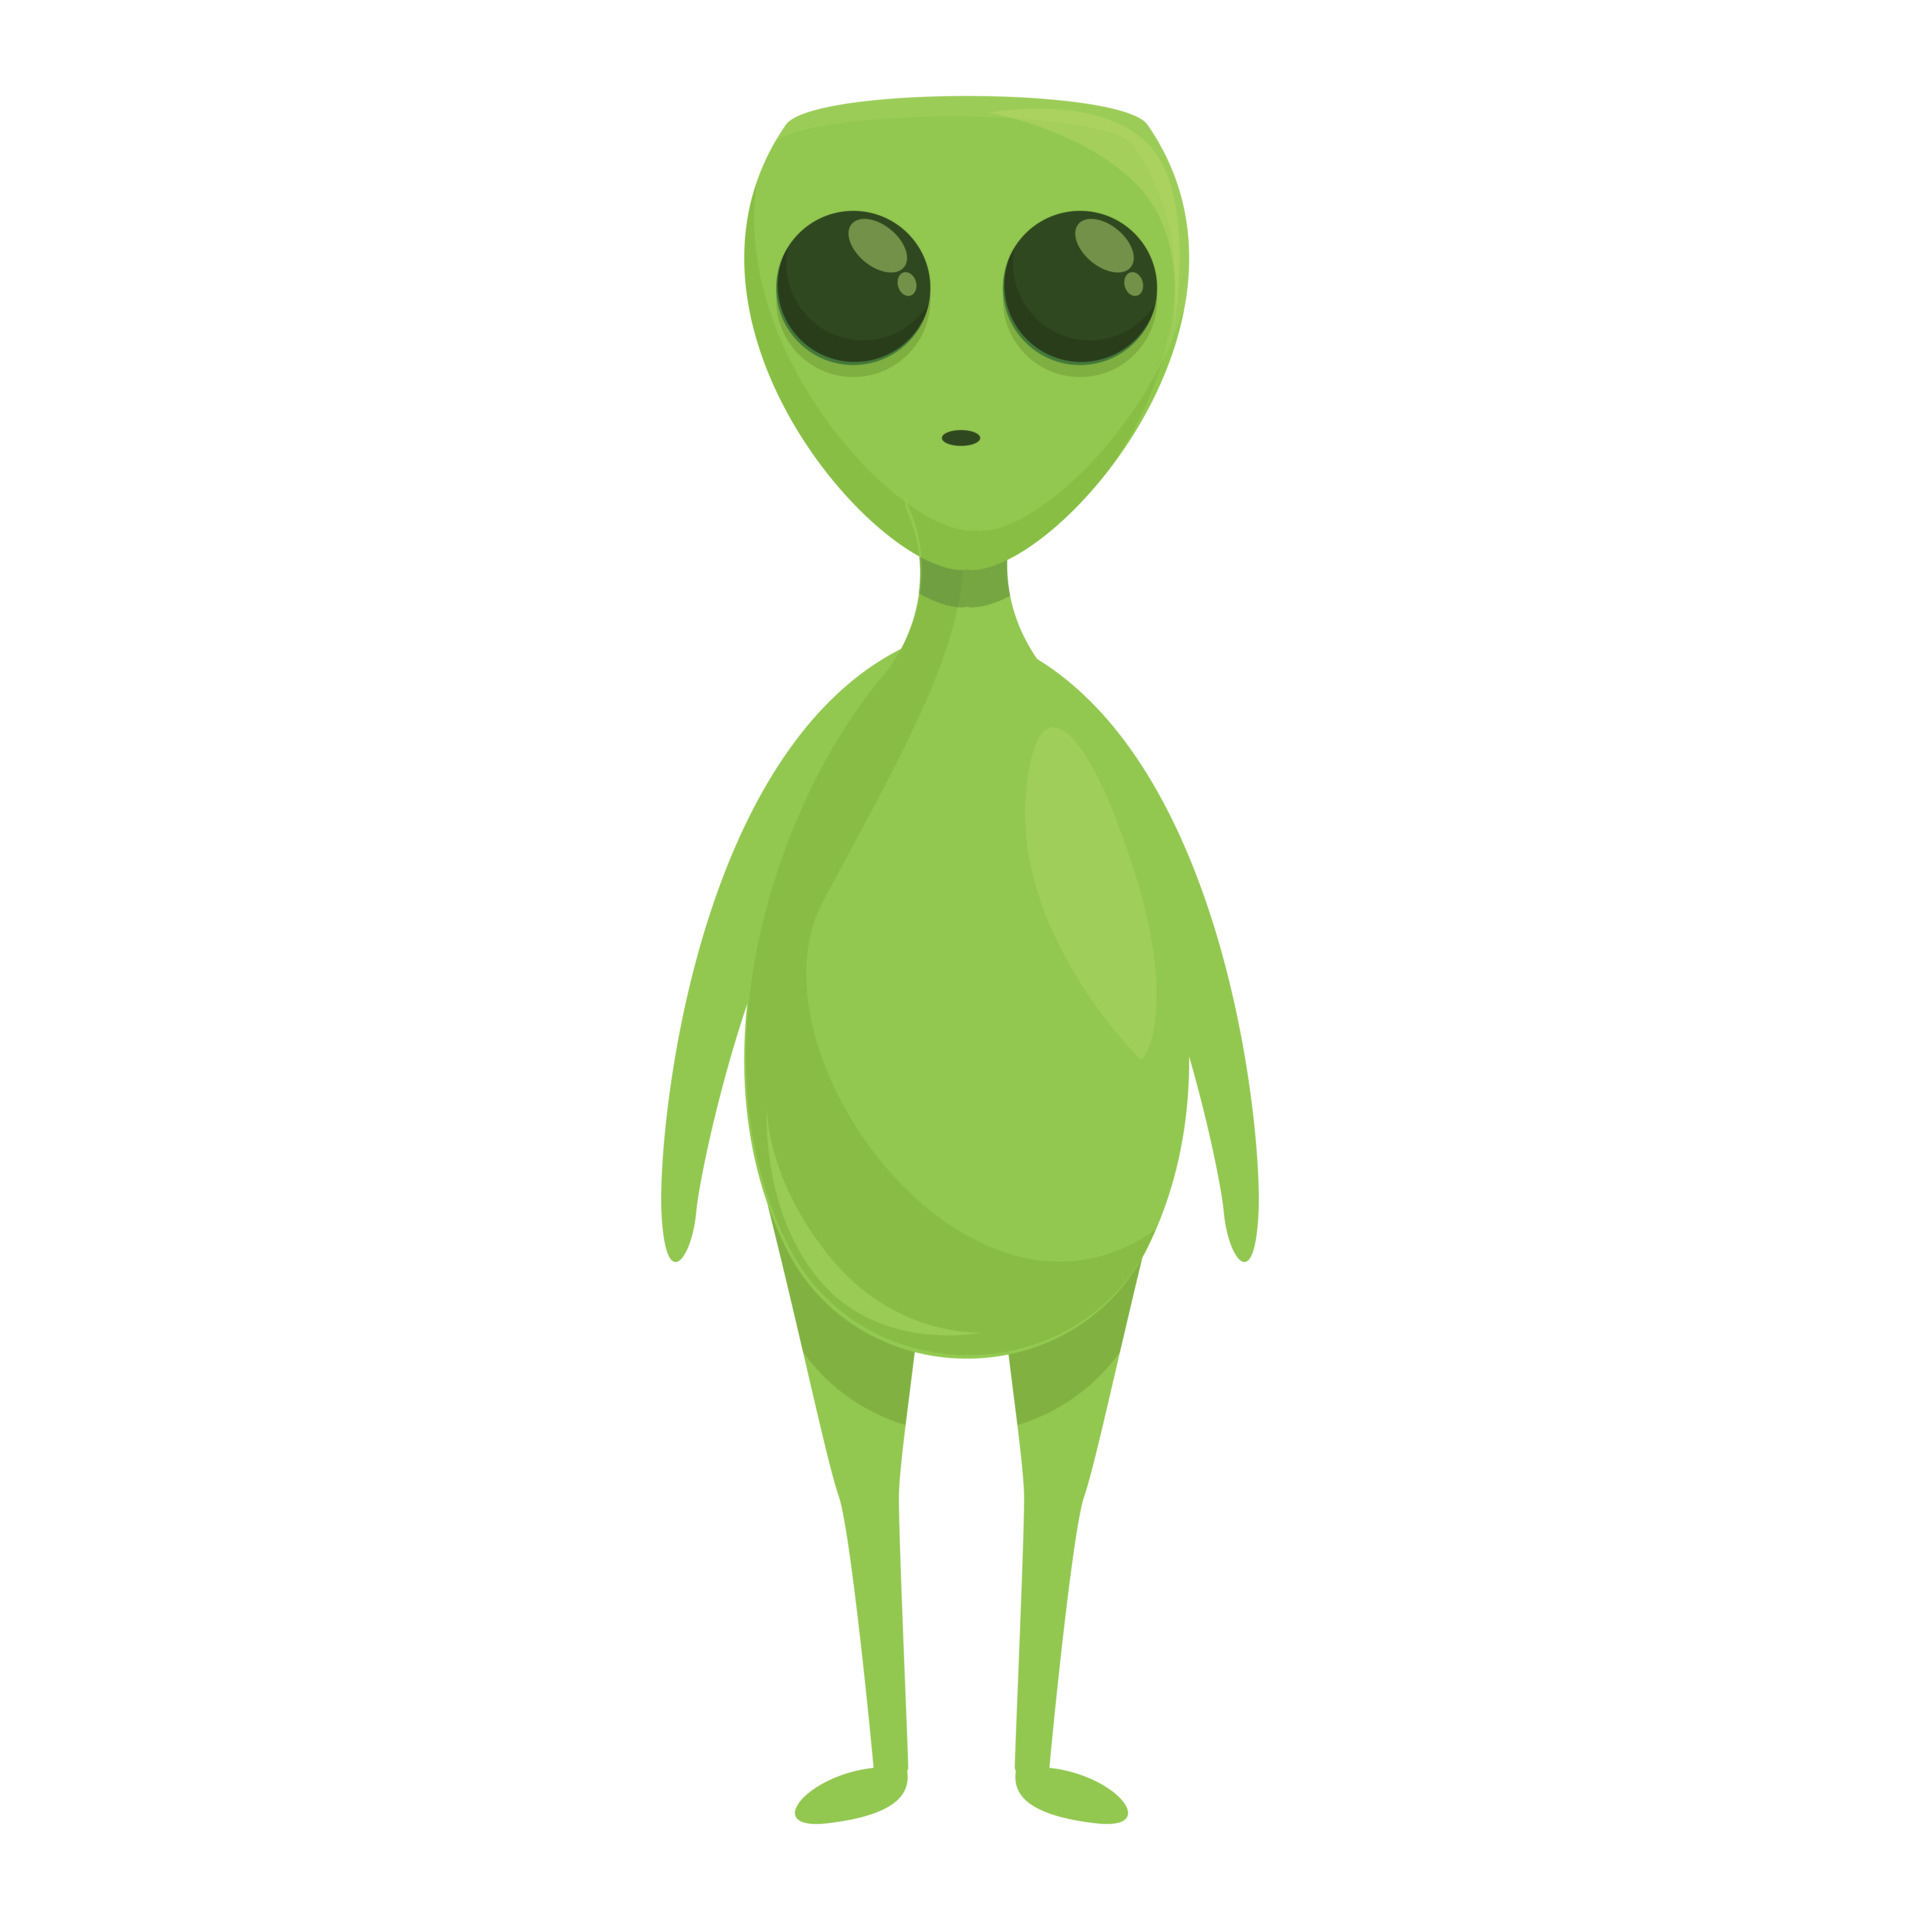 Um desenho animado de um alienígena com um rosto roxo e um